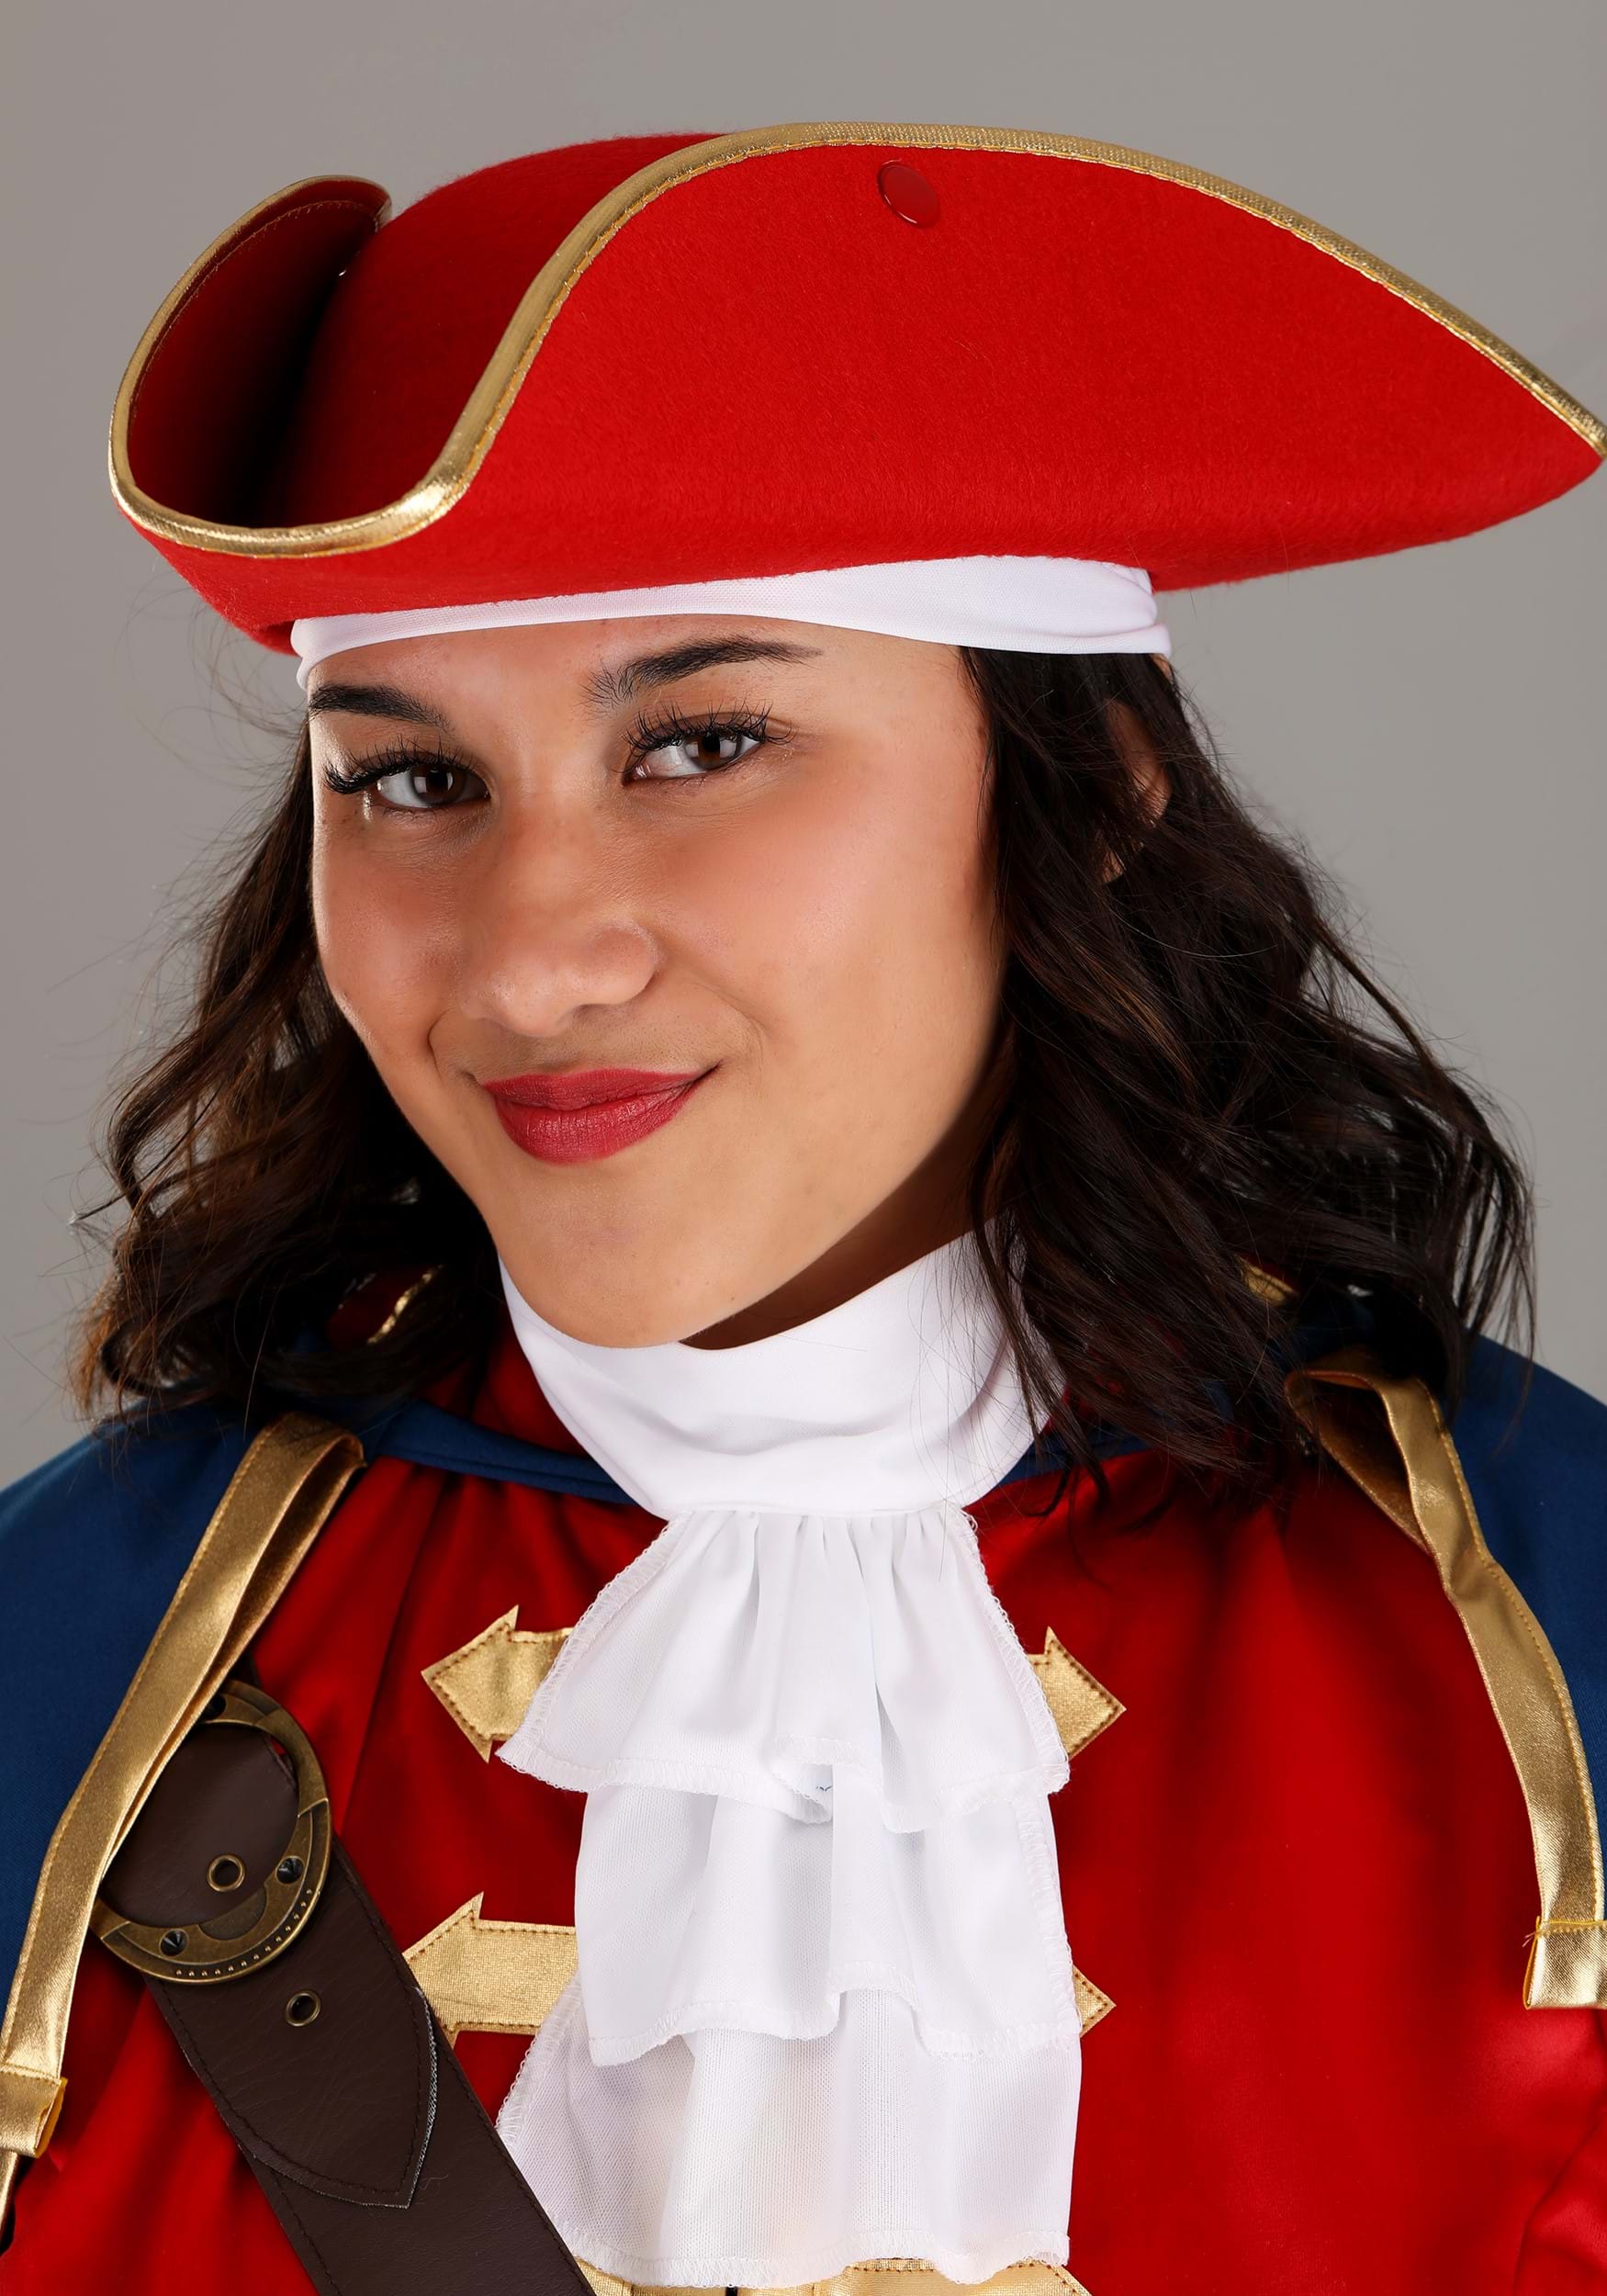 Captain Pirate Women's Plus Size Fancy Dress Costume